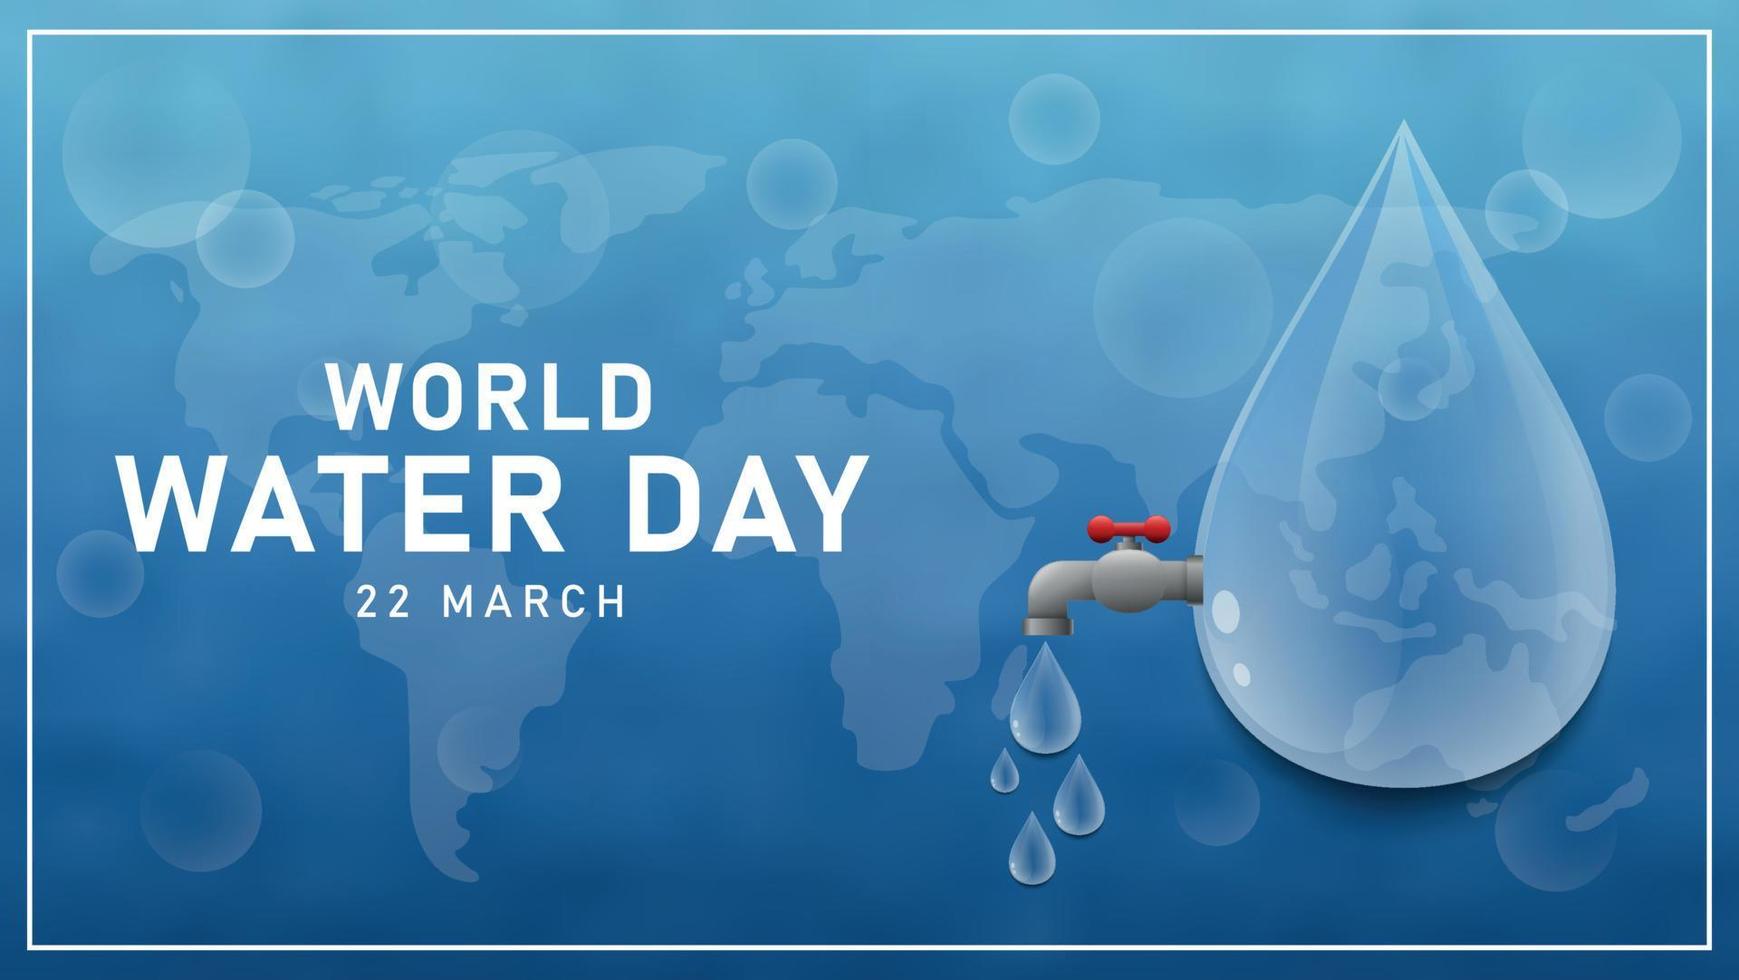 fondo de plantilla de ilustración de día mundial del agua vector